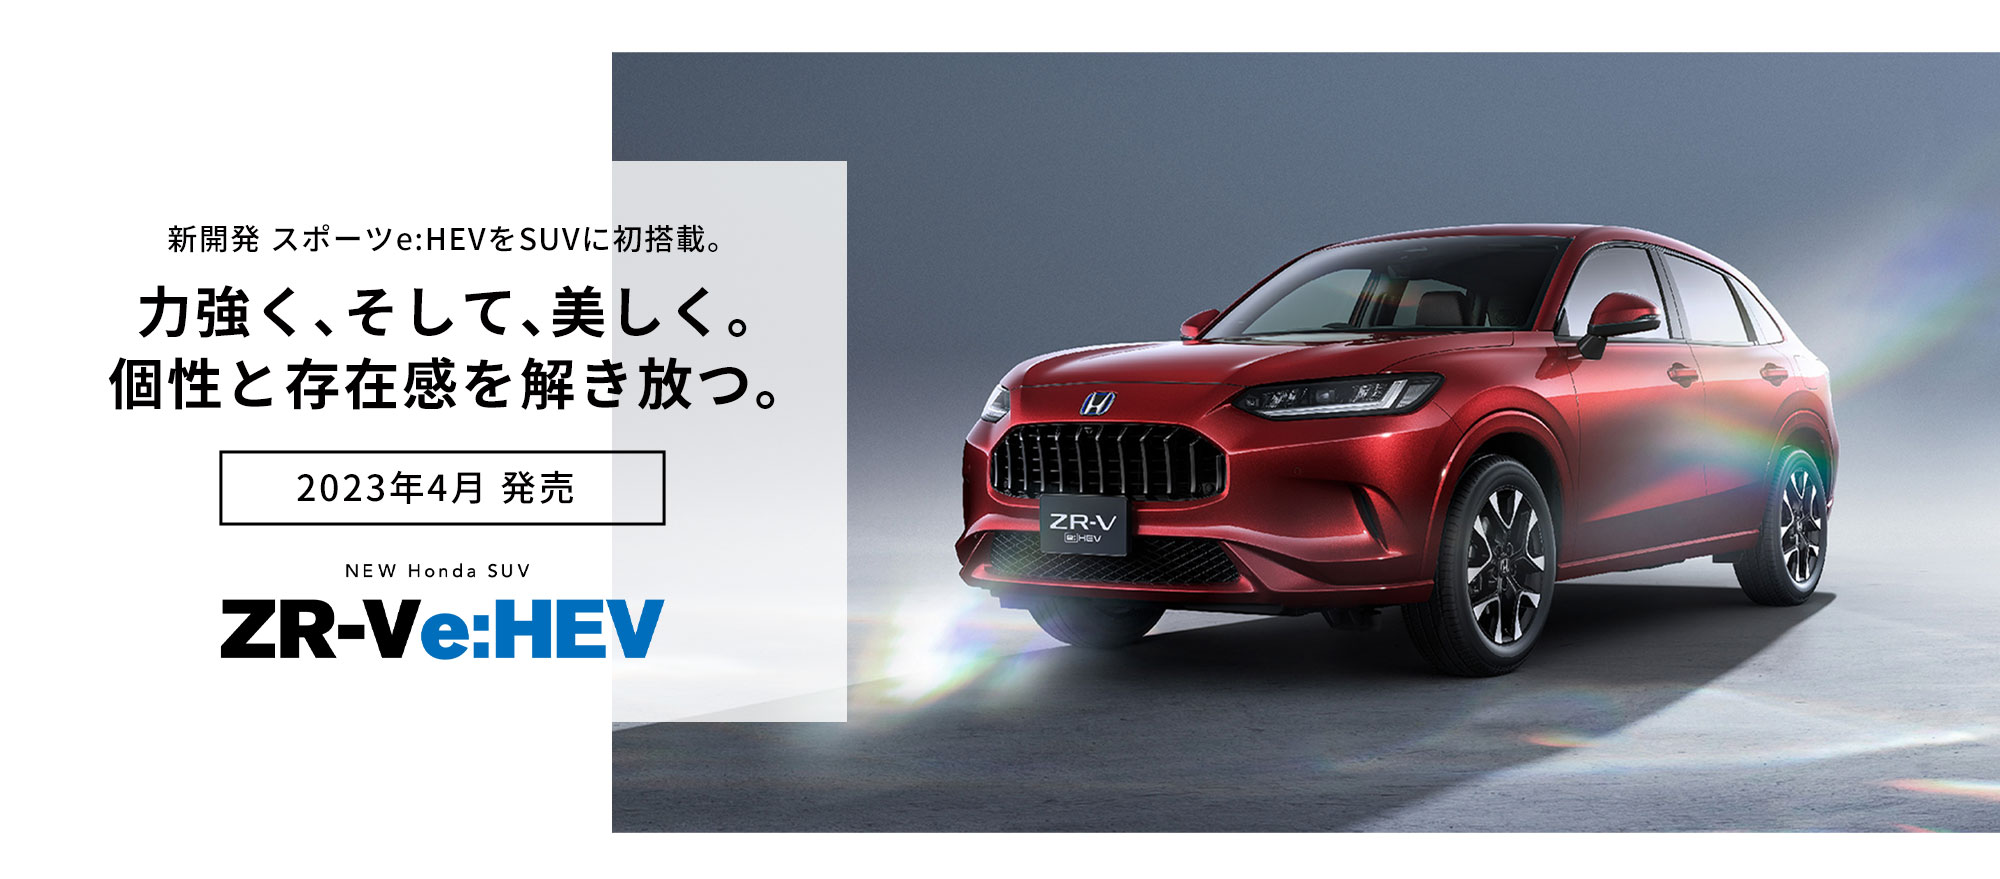 新開発 スポーツe:HEVをSUVに初搭載。力強く、そして、美しく。個性と存在感を解き放つ。9月8日先行予約開始 NEW Honda SUV ZR-Ve:HEV